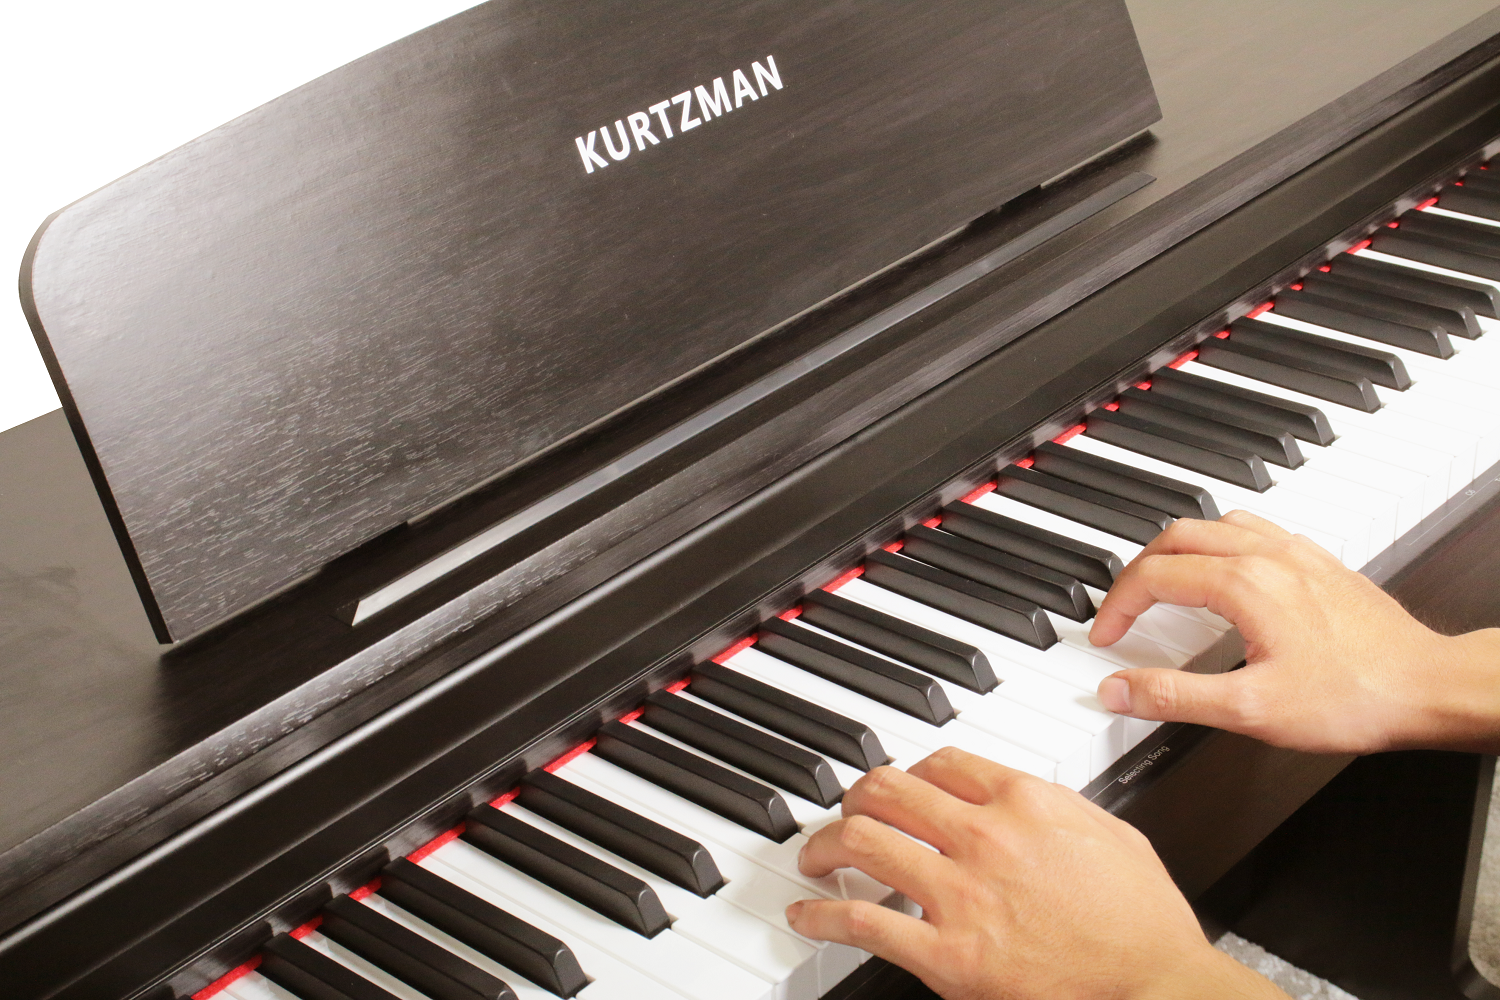 Đàn Piano điện cao cấp, Home Digital Piano - Kzm Kurtzman KS1 Bluetooth - Dáng Upright, Bluetooth 5.0 - Màu nâu đen (DR) - Hàng chính hãng